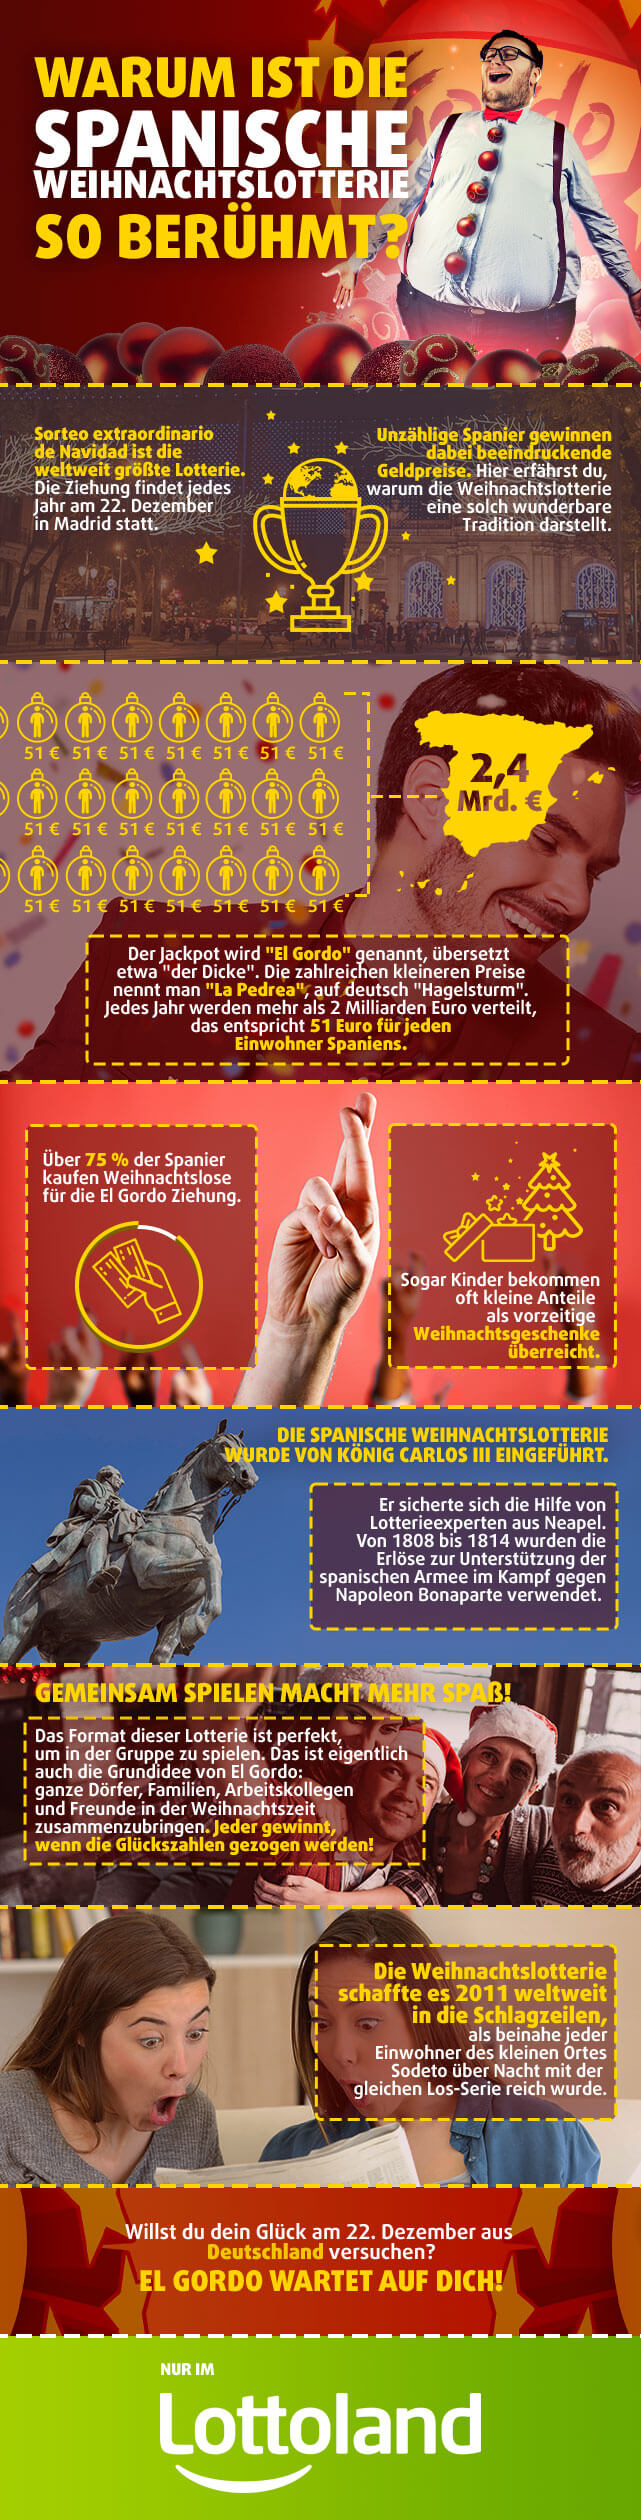 Infografik mit Zahlen und Fakten zur spanischen Weihnachtslotterie